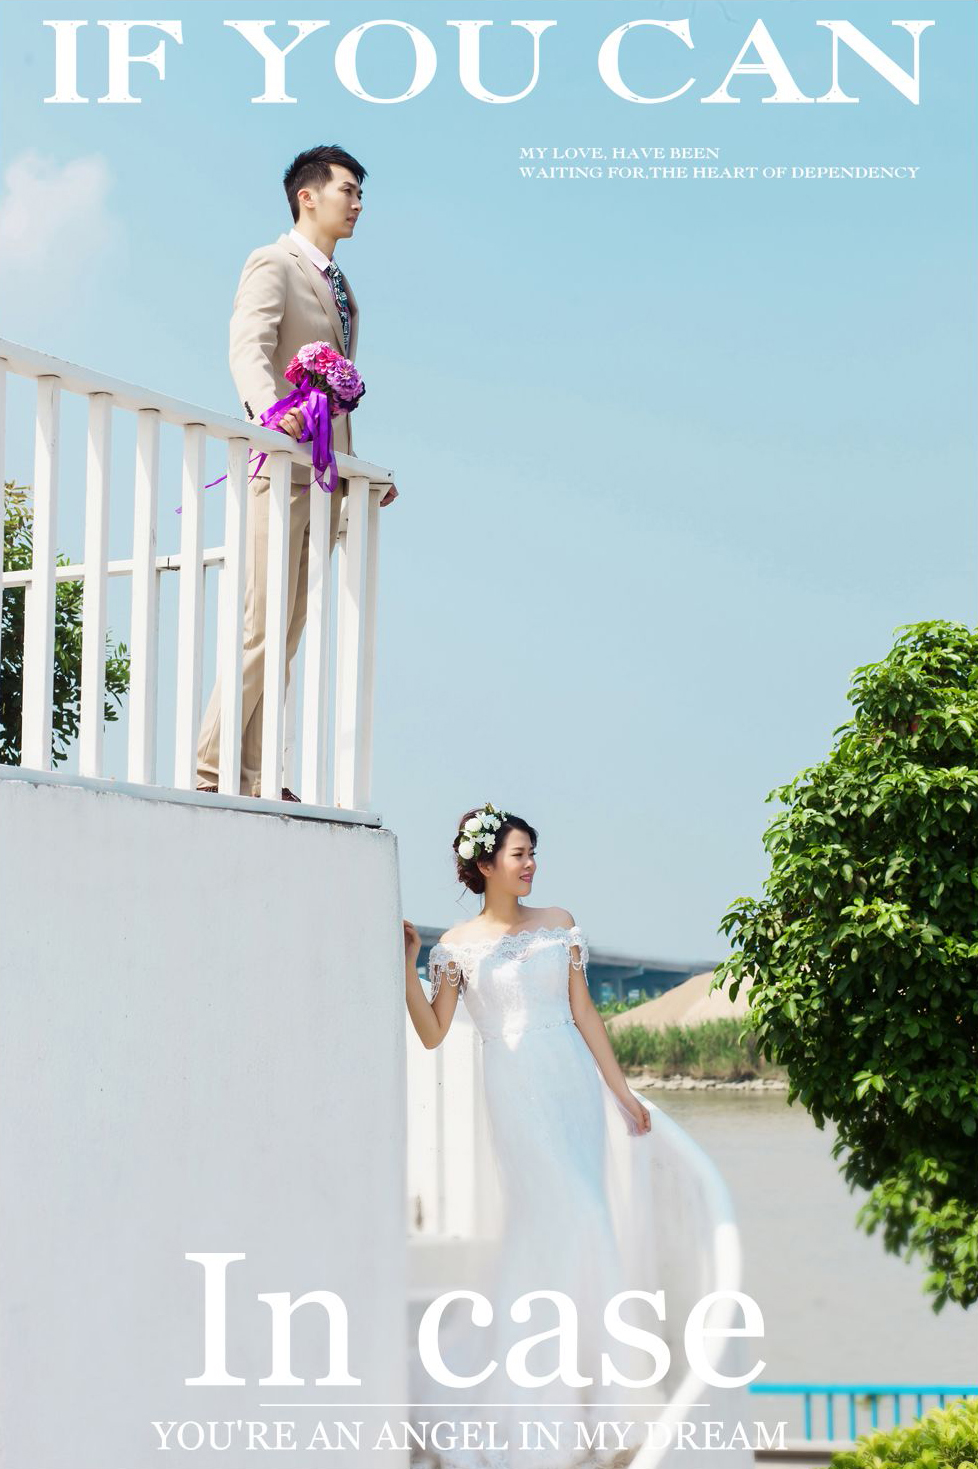 2017年7月广州结婚照,湛江婚纱照,婚纱照图片